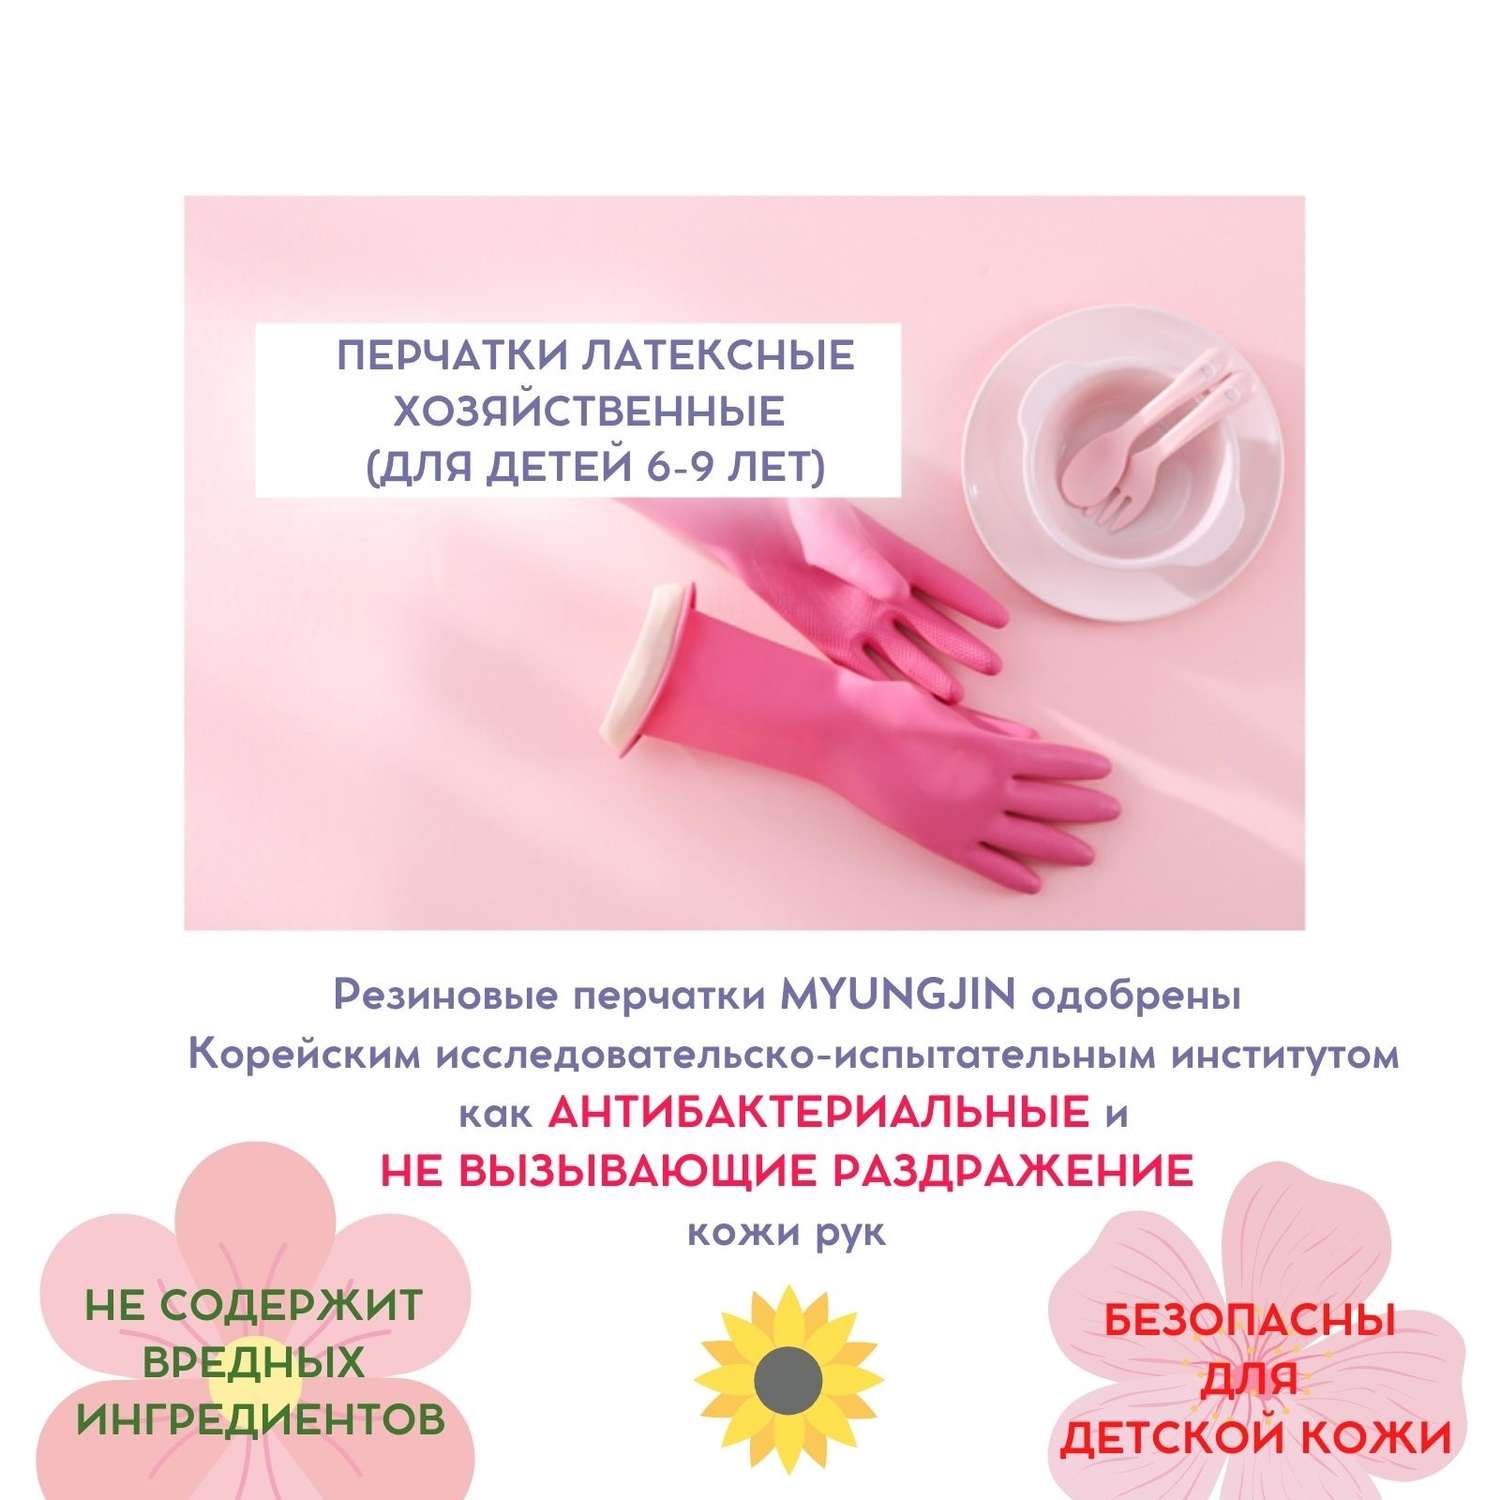 Перчатки латексные HOME EDITION MYUNGJIN хозяйственные для детей от 6 до 9 лет 29х17 см цвет розовый - фото 3